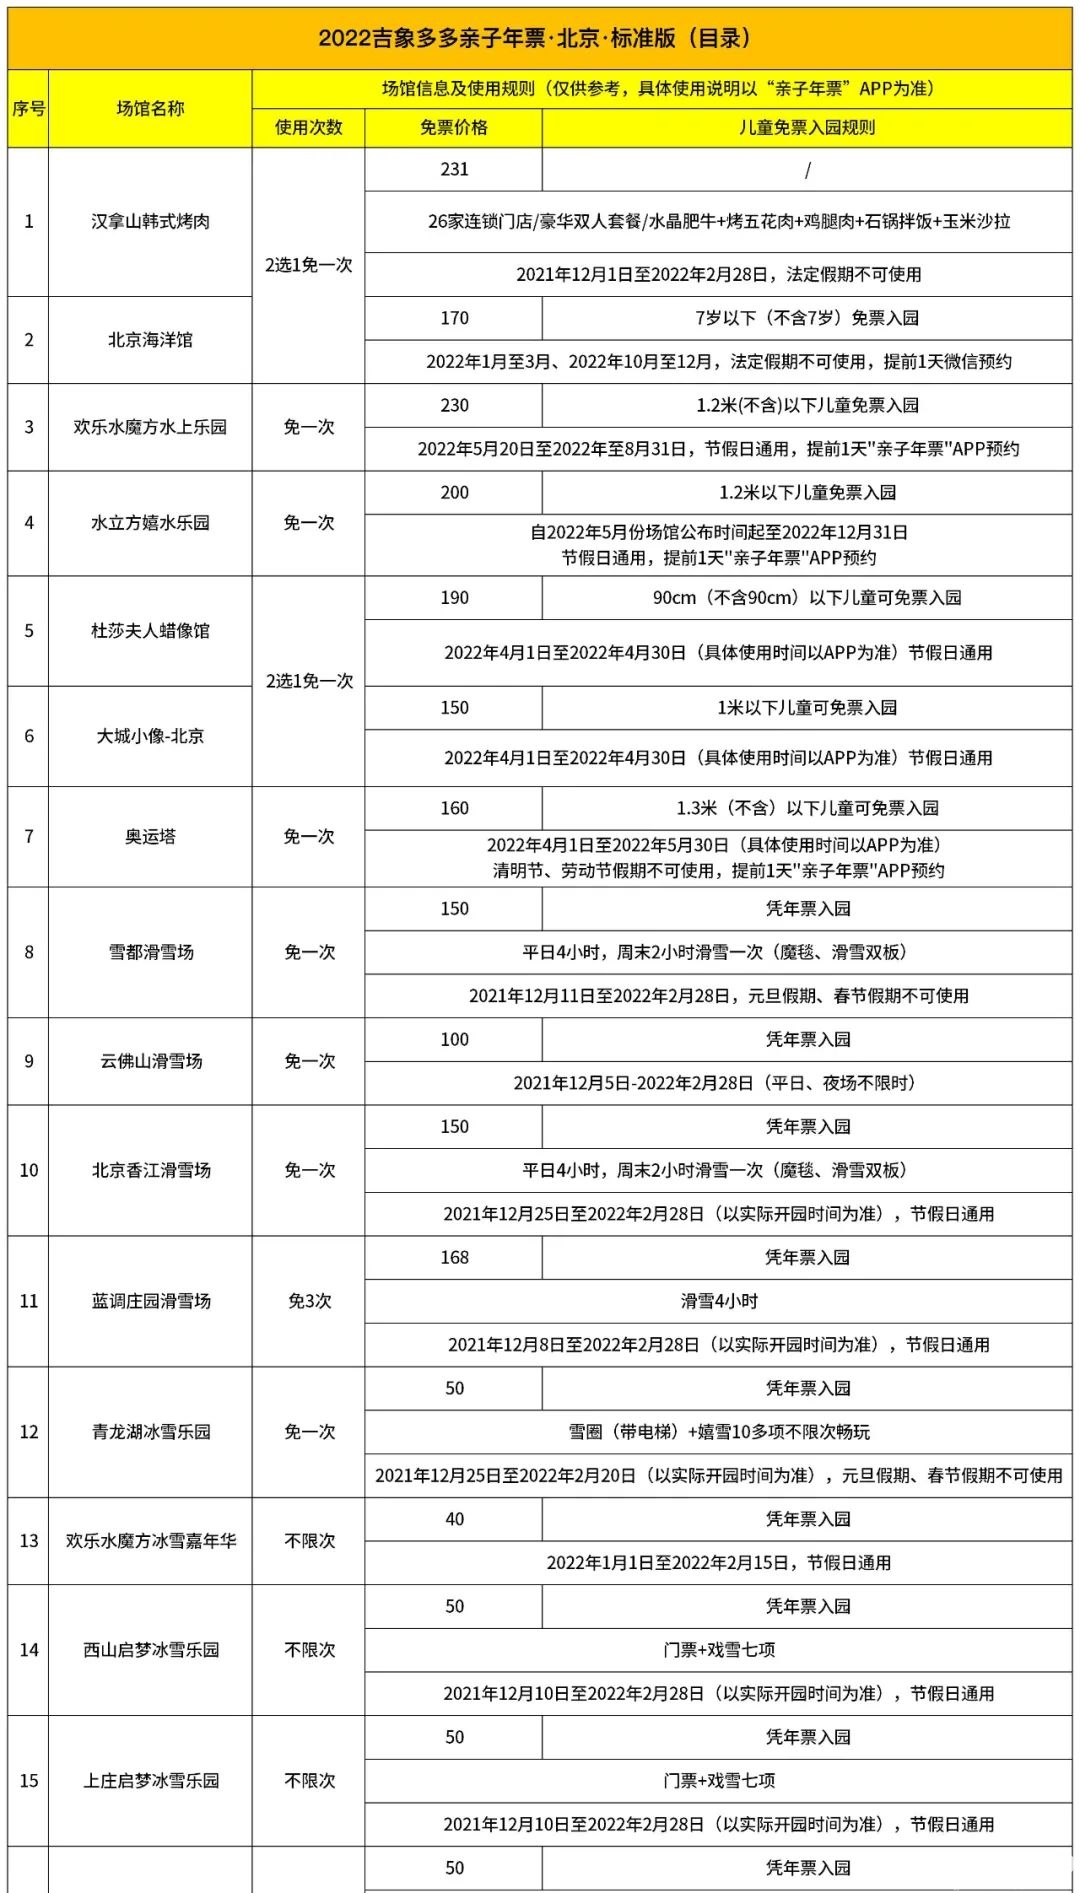 2022吉象多多亲子年票北京标准版景区目录[墙根网]